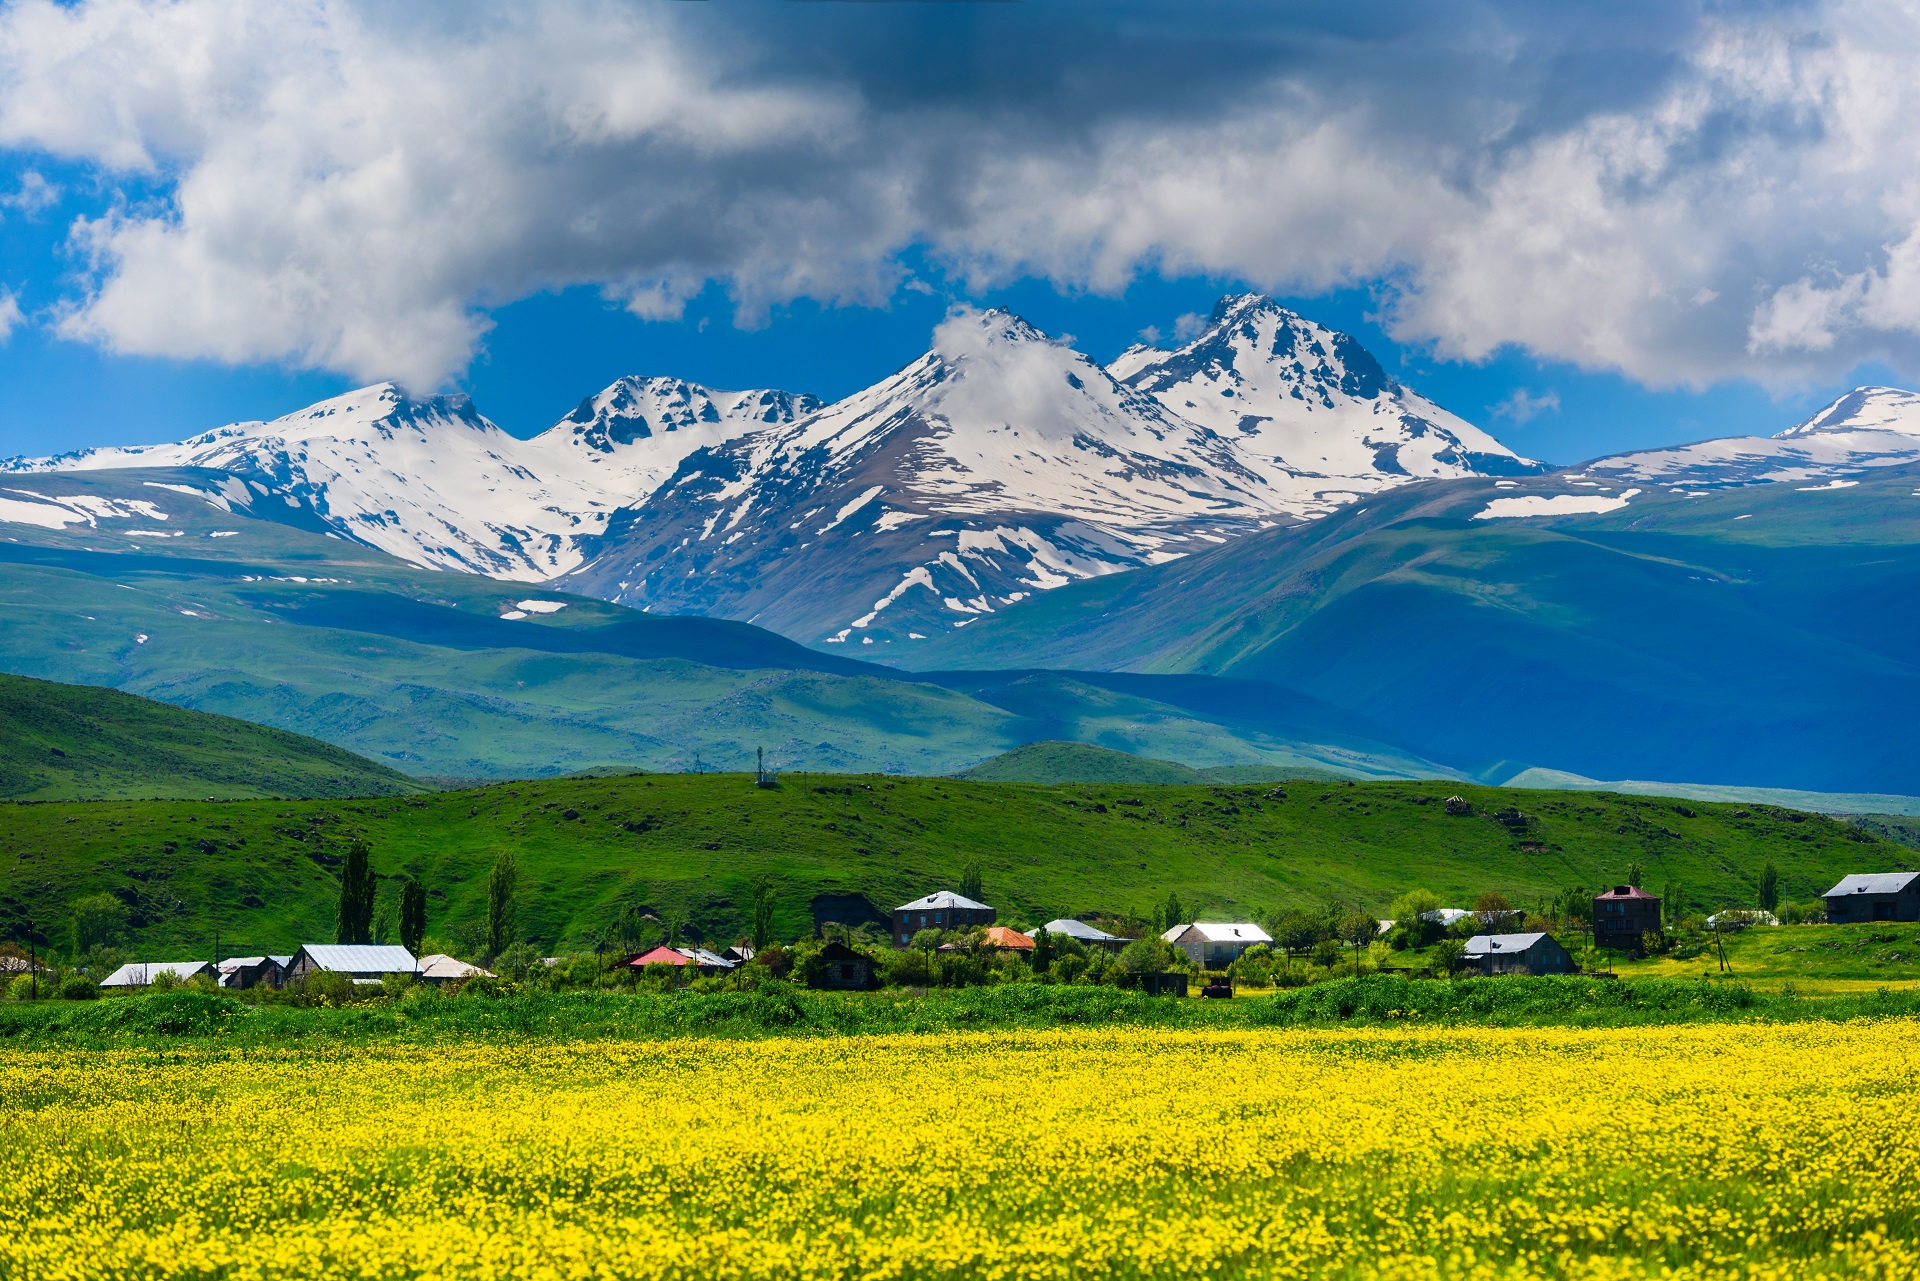 Der Berg Aragats in Armenien mit einer gelben Blumenwiese im Vordergrund.